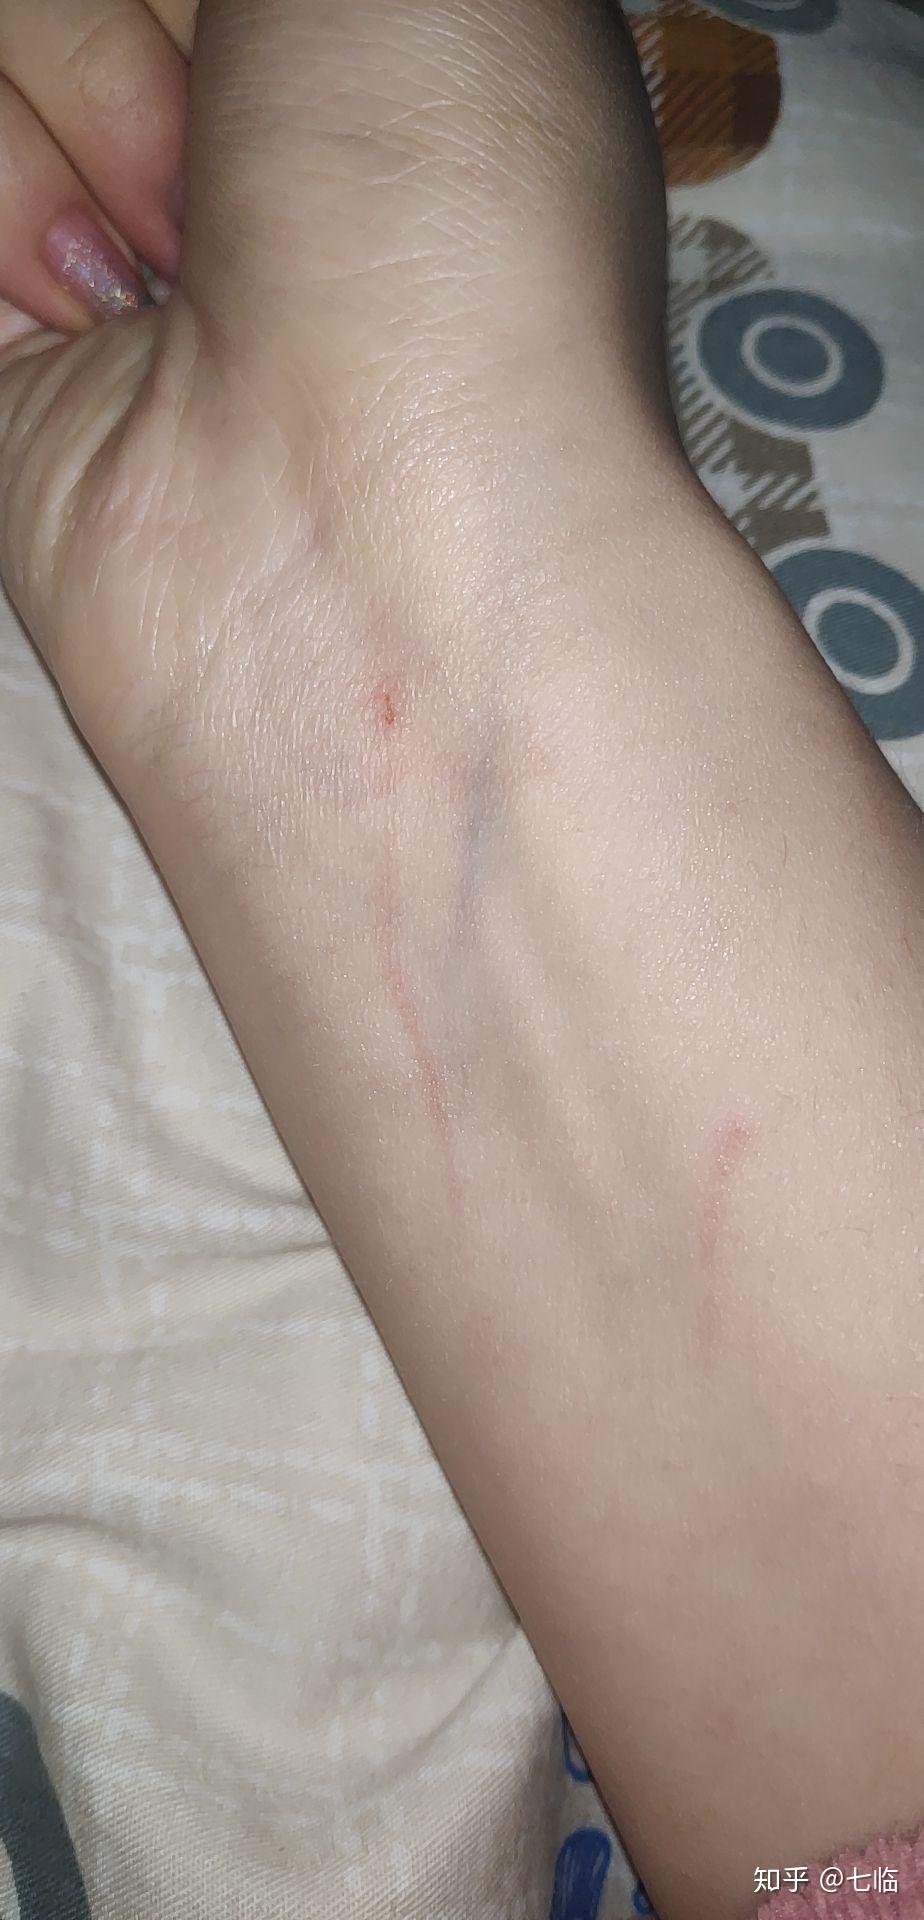 刚刚被猫抓伤了出了一点血大概是表皮的我刚刚舔了一下伤口用不用打